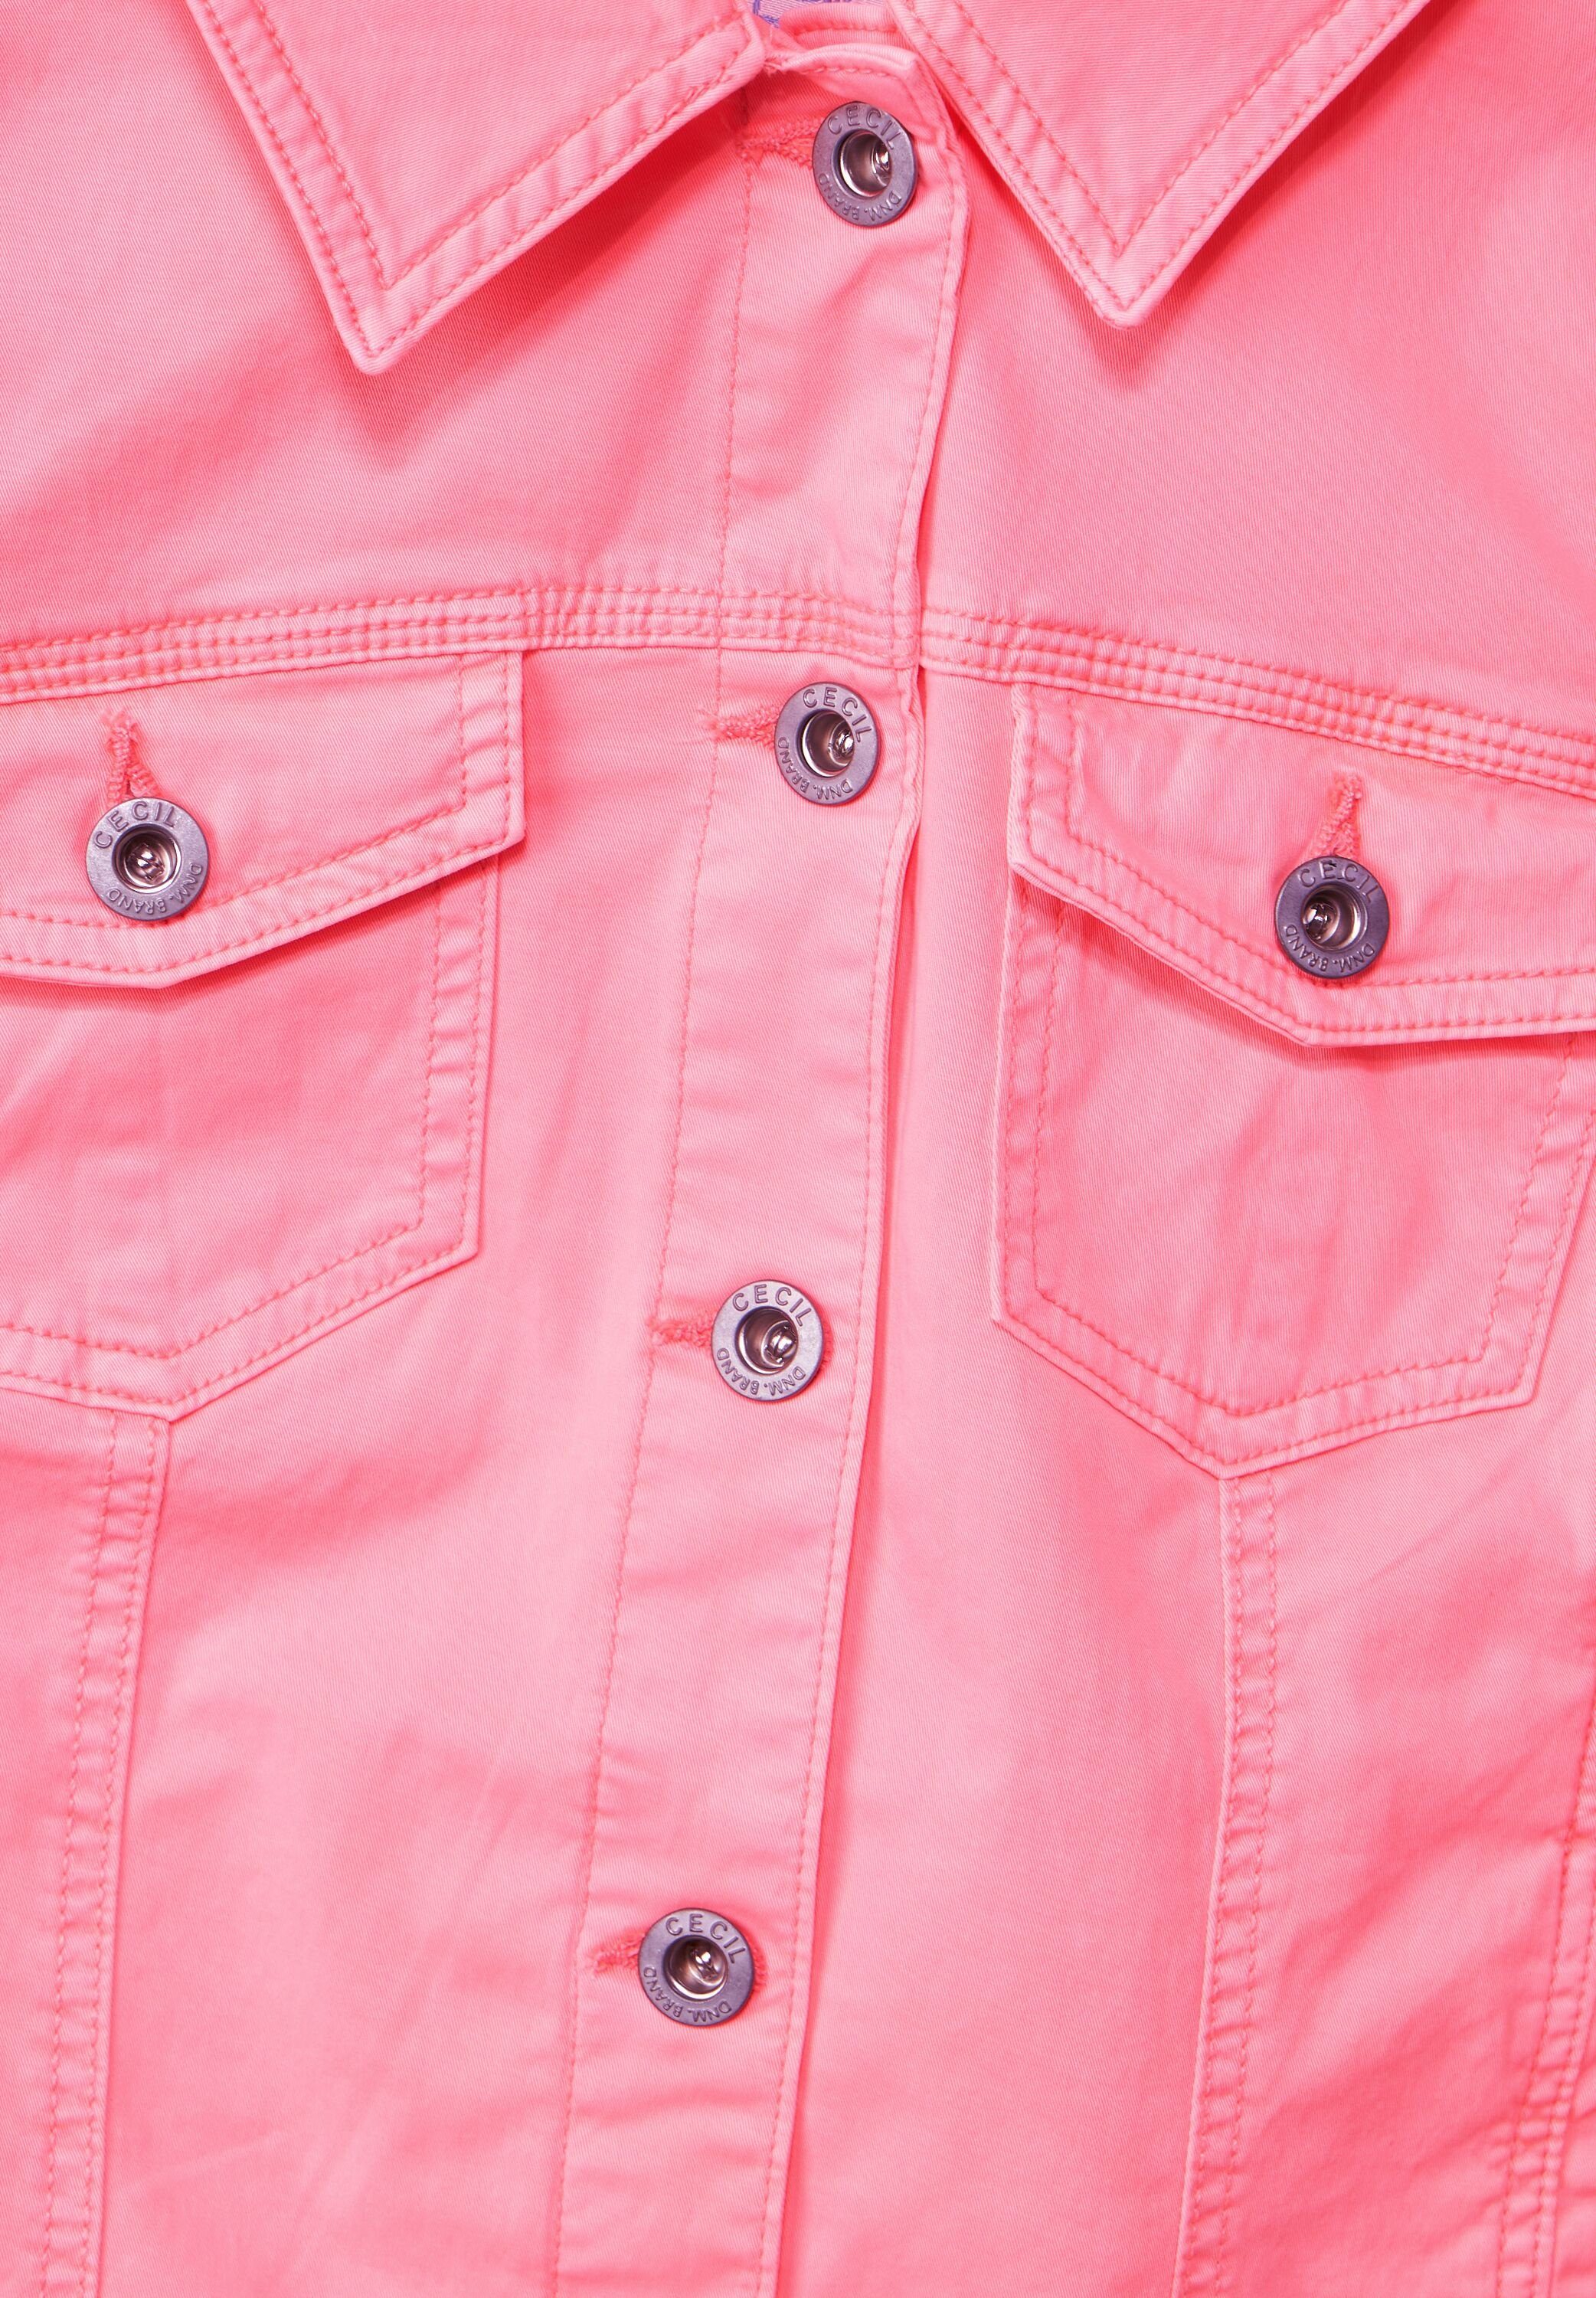 Jeansjacke pink Farbige soft neon Jeansjacke Cecil